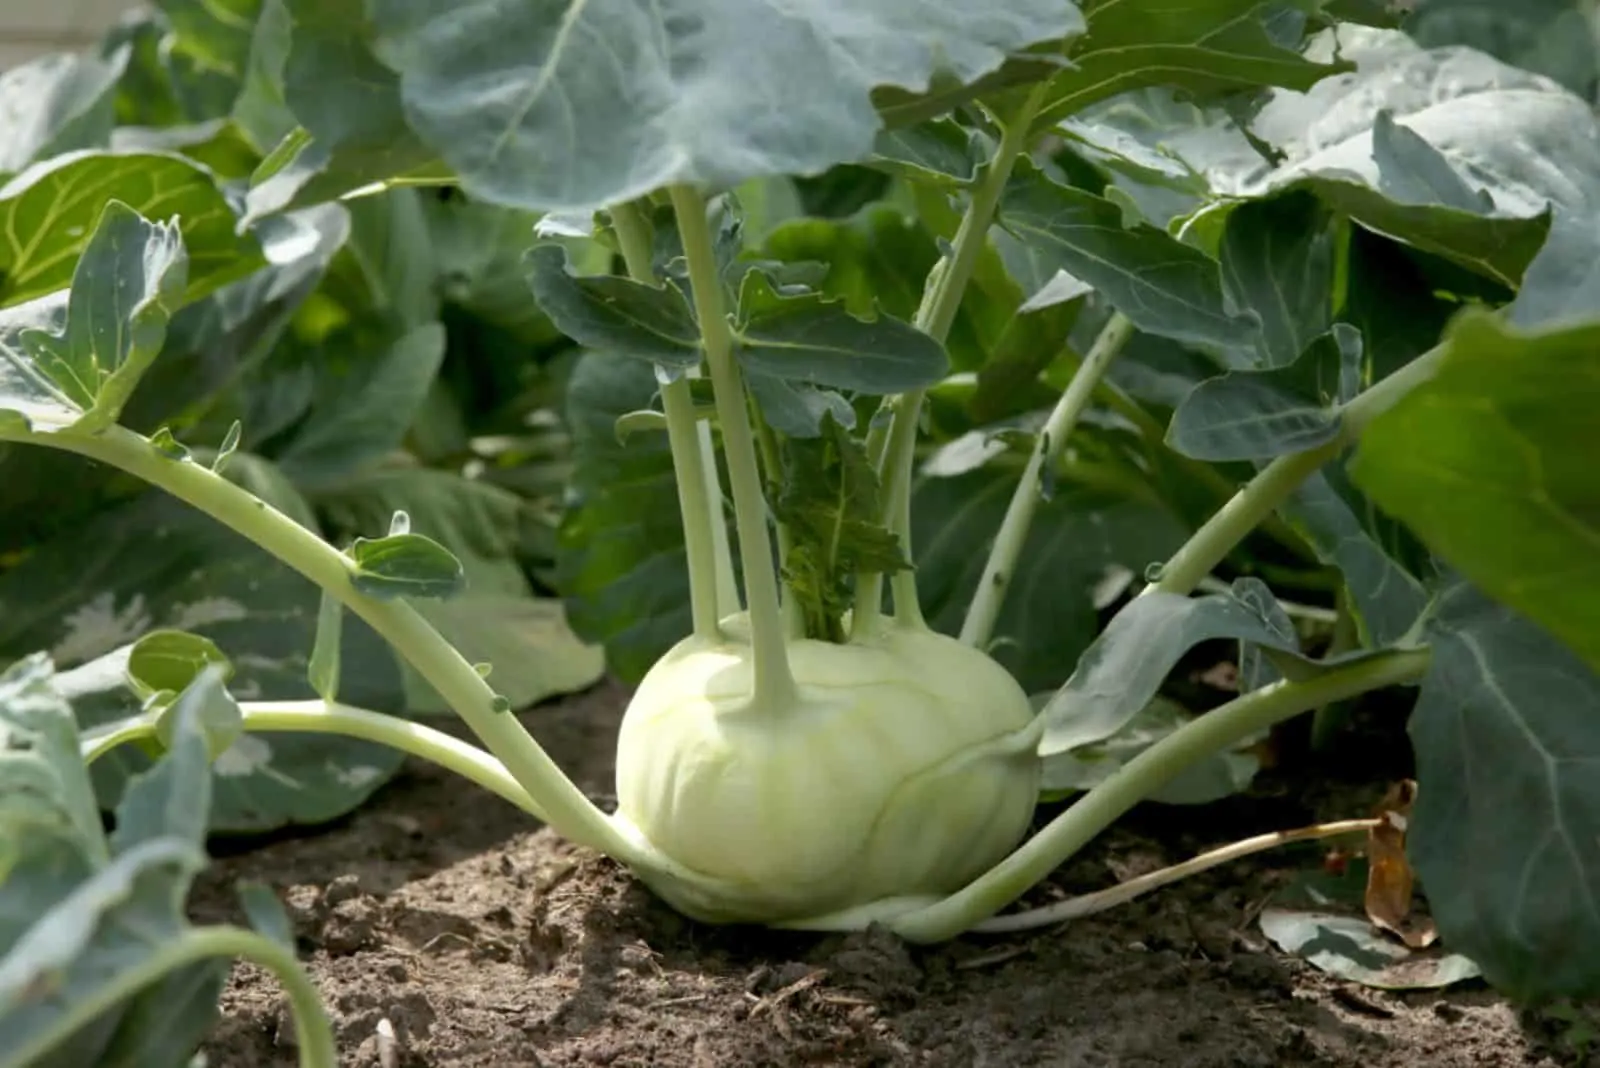 Kohlrabi cabbage growing in garden